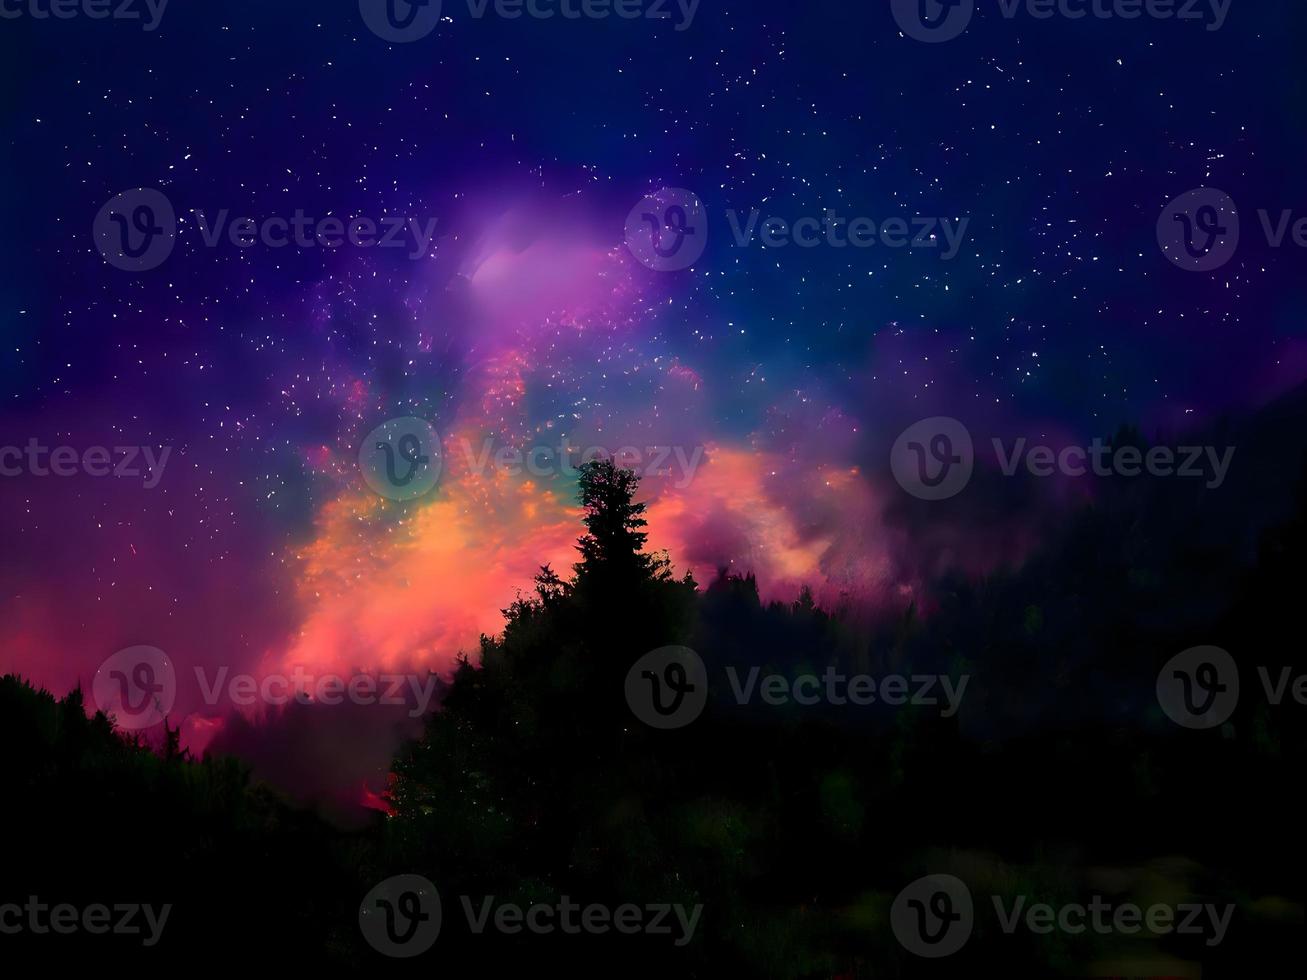 vía láctea y luz rosa en las montañas. paisaje colorido nocturno. cielo estrellado con colinas. hermoso universo. fondo espacial con galaxia. fondo de viaje foto